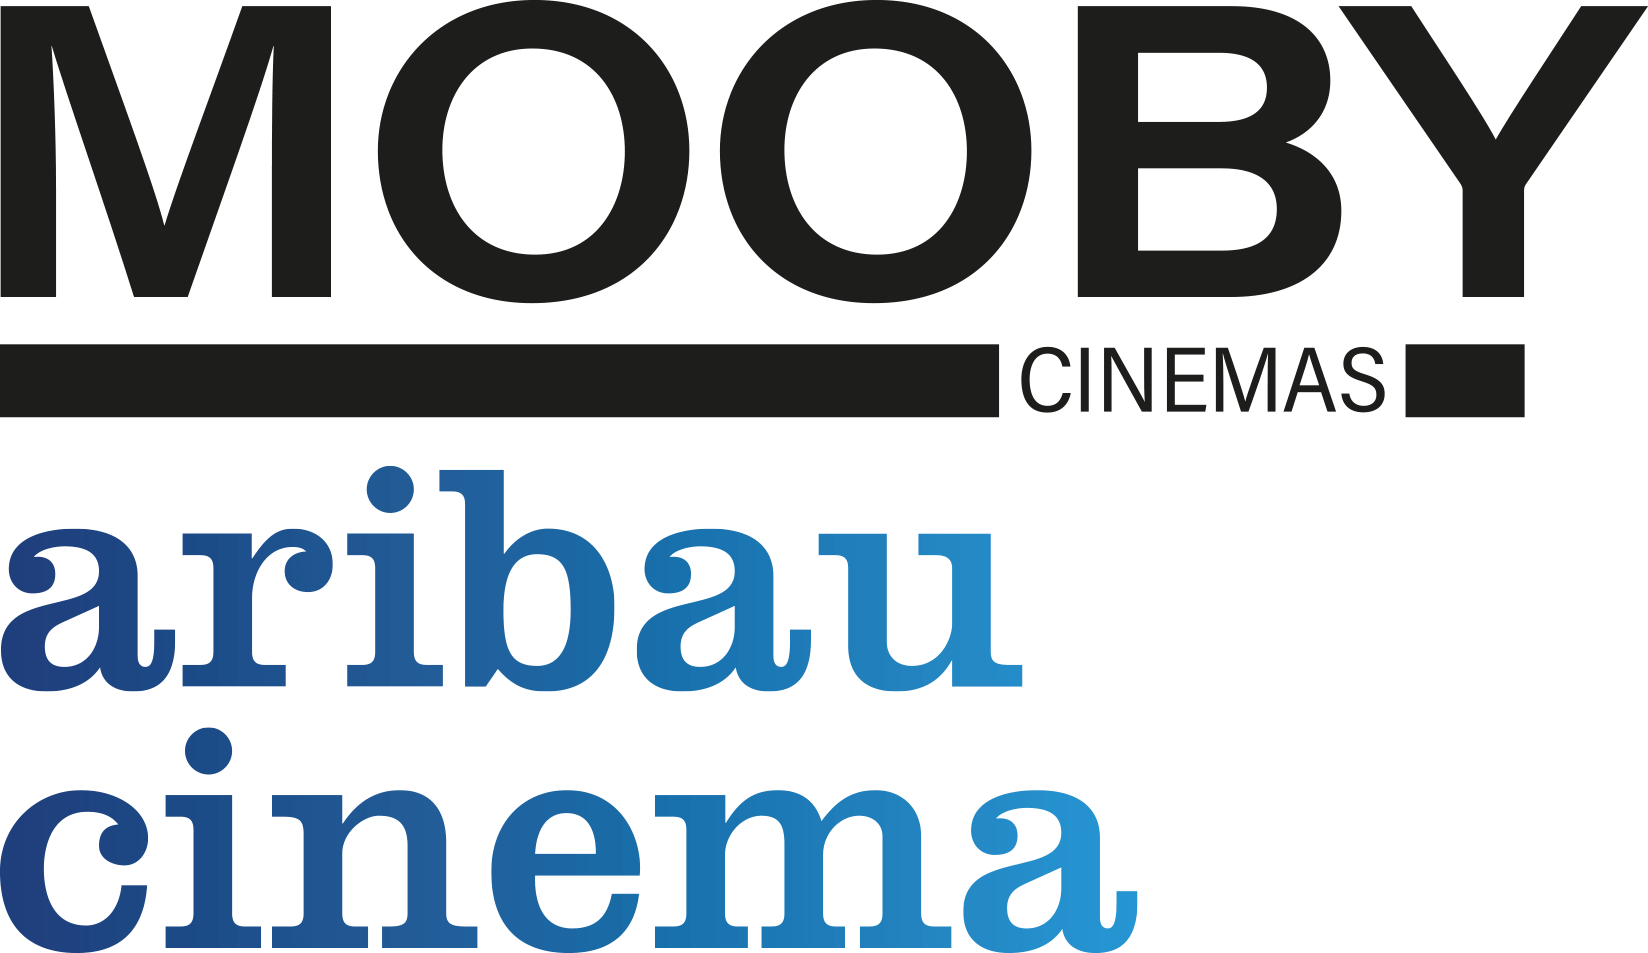 Aribau Cinema